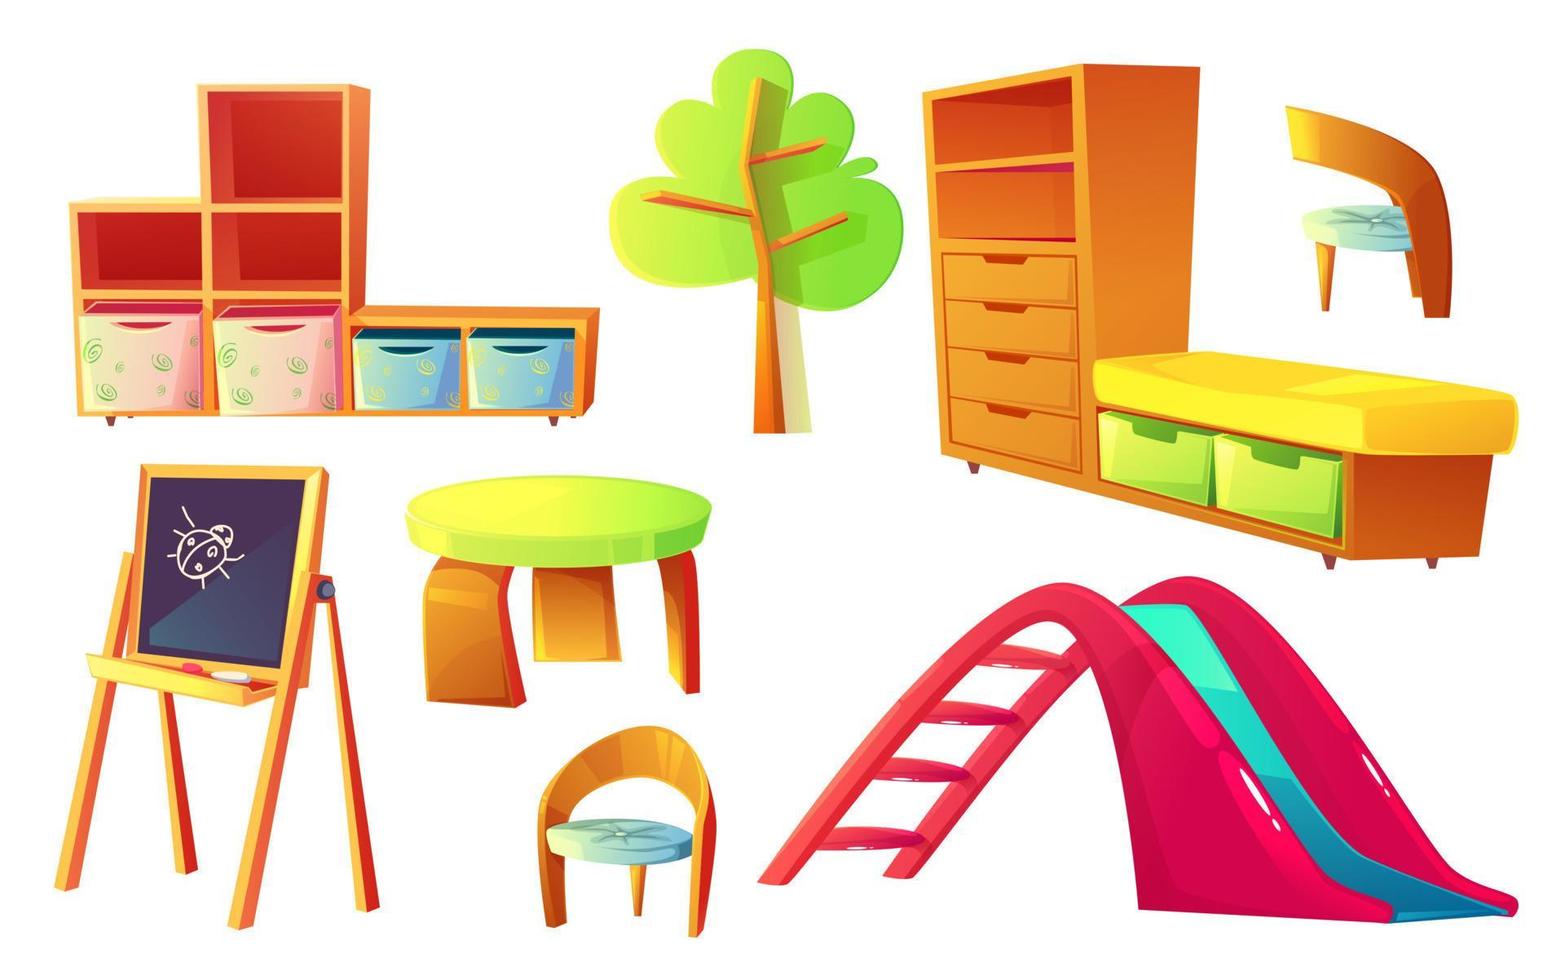 kleuterschool meubilair voor kinderen klasse kamer vector